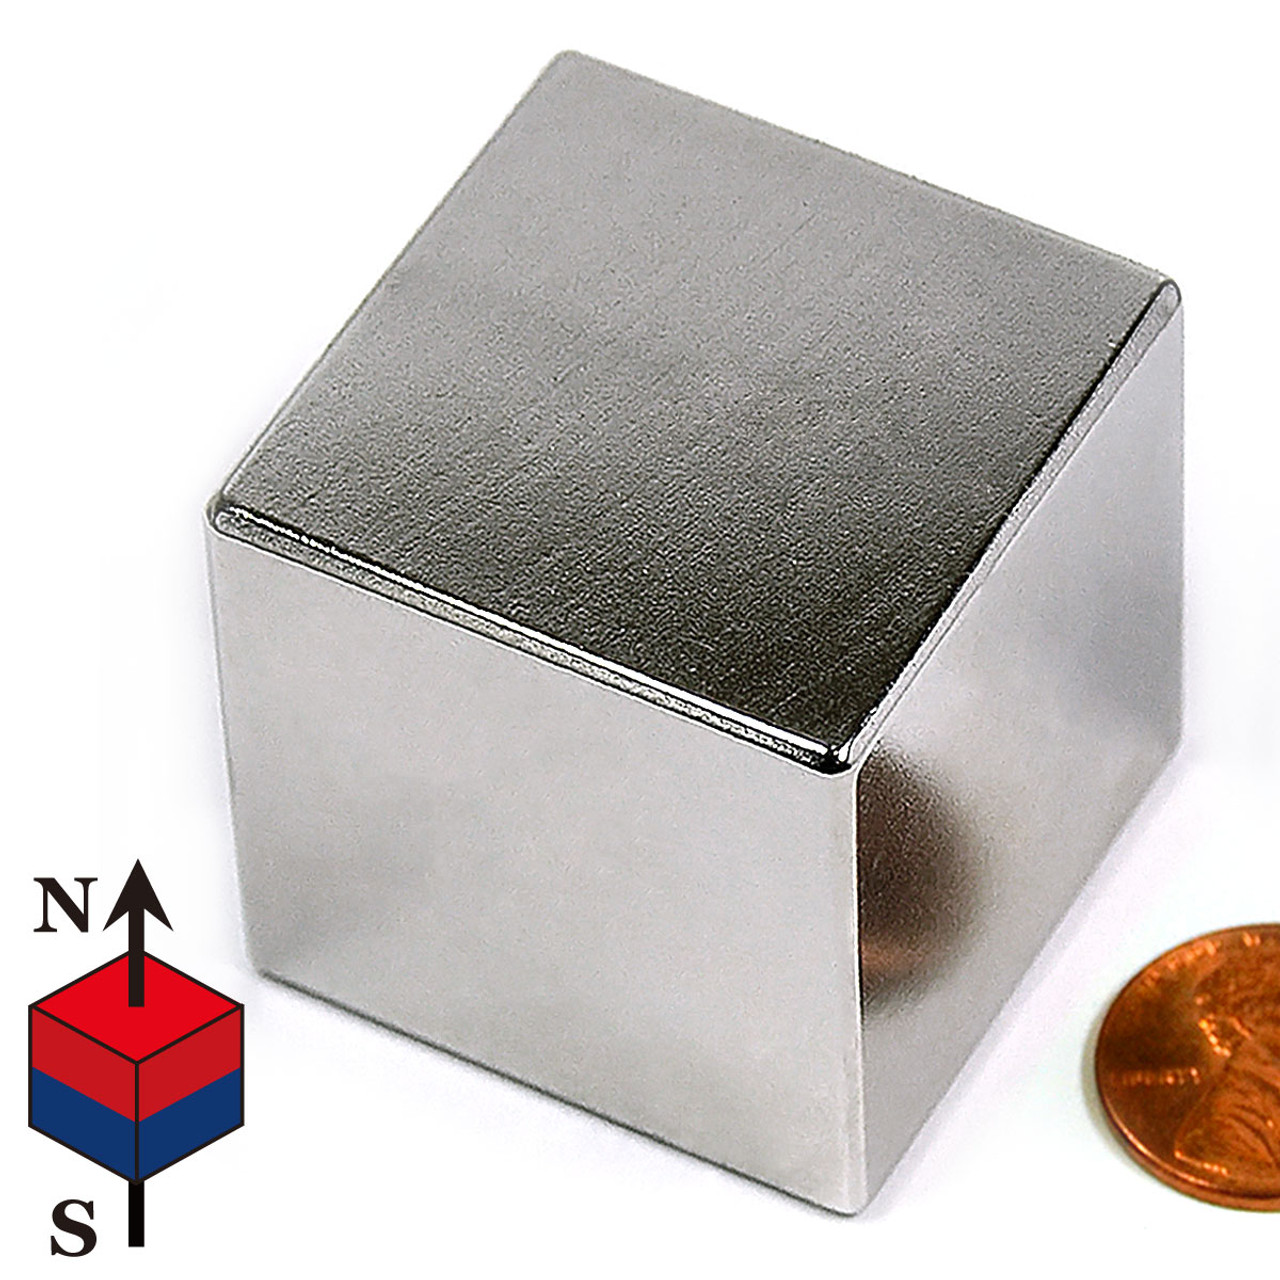 1 1/2" Cube Neodymium Magnet